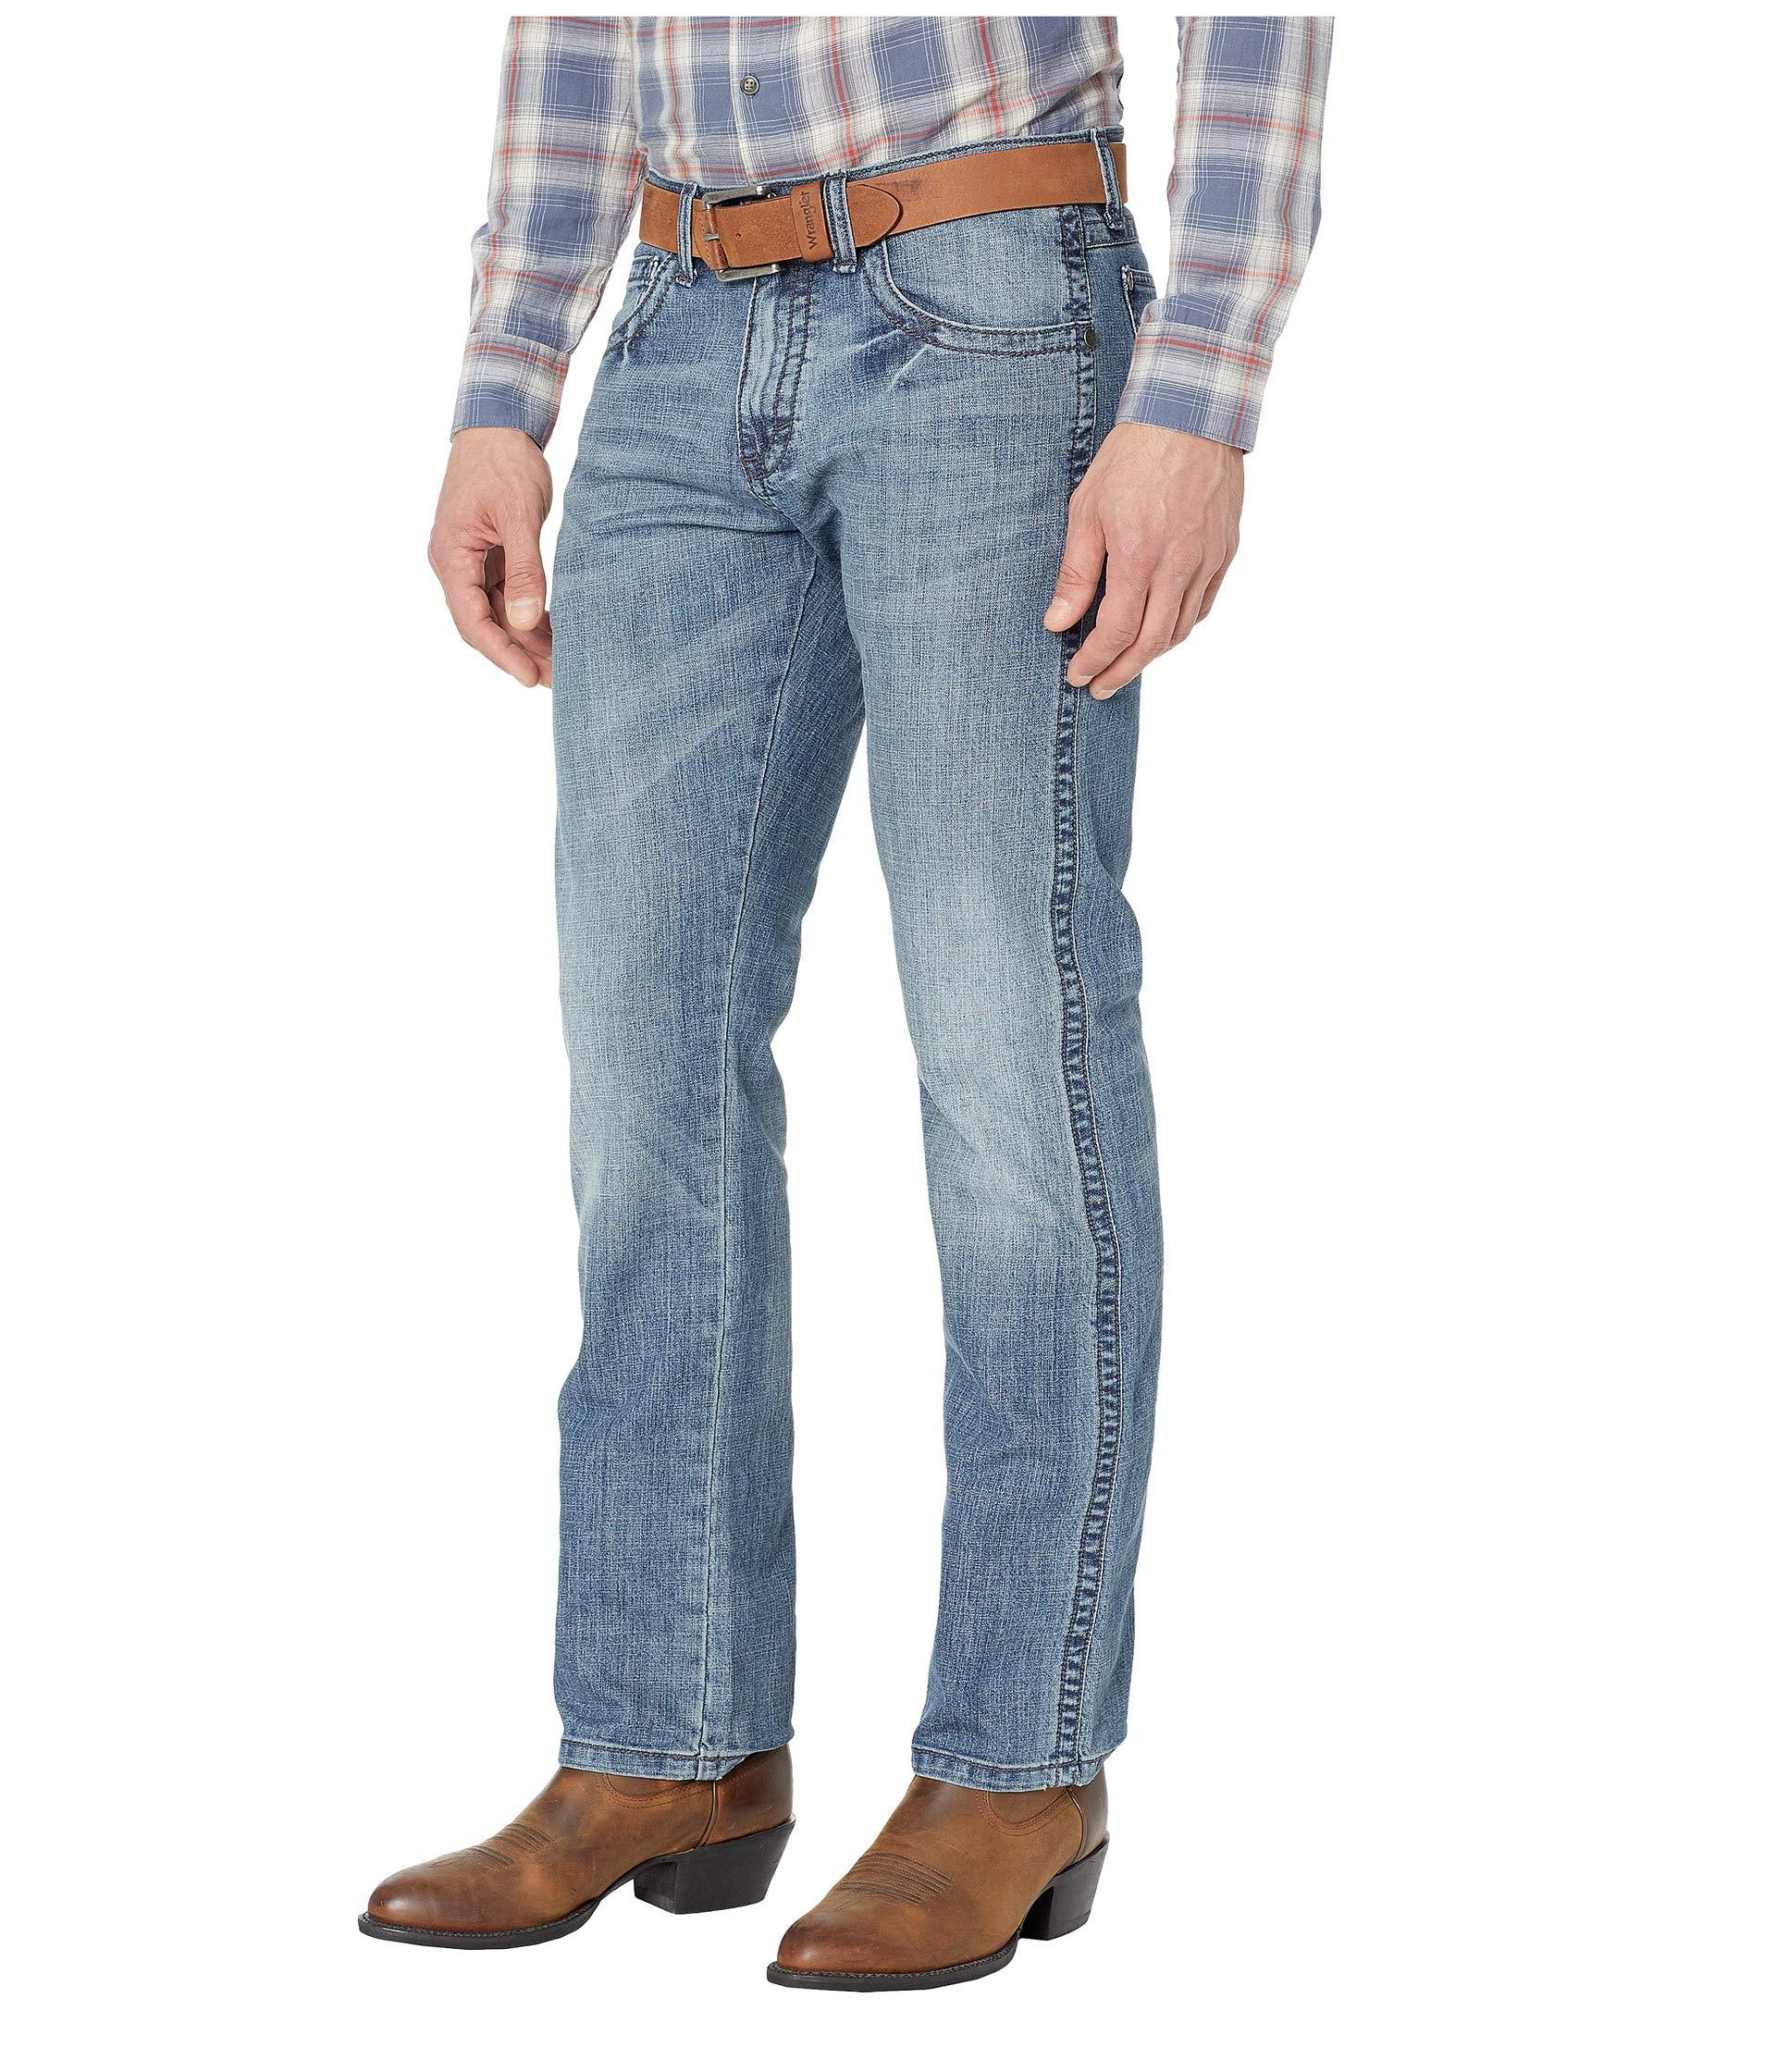 Wrangler Denim 20x Jeans Slim Straight in Red for Men - Lyst